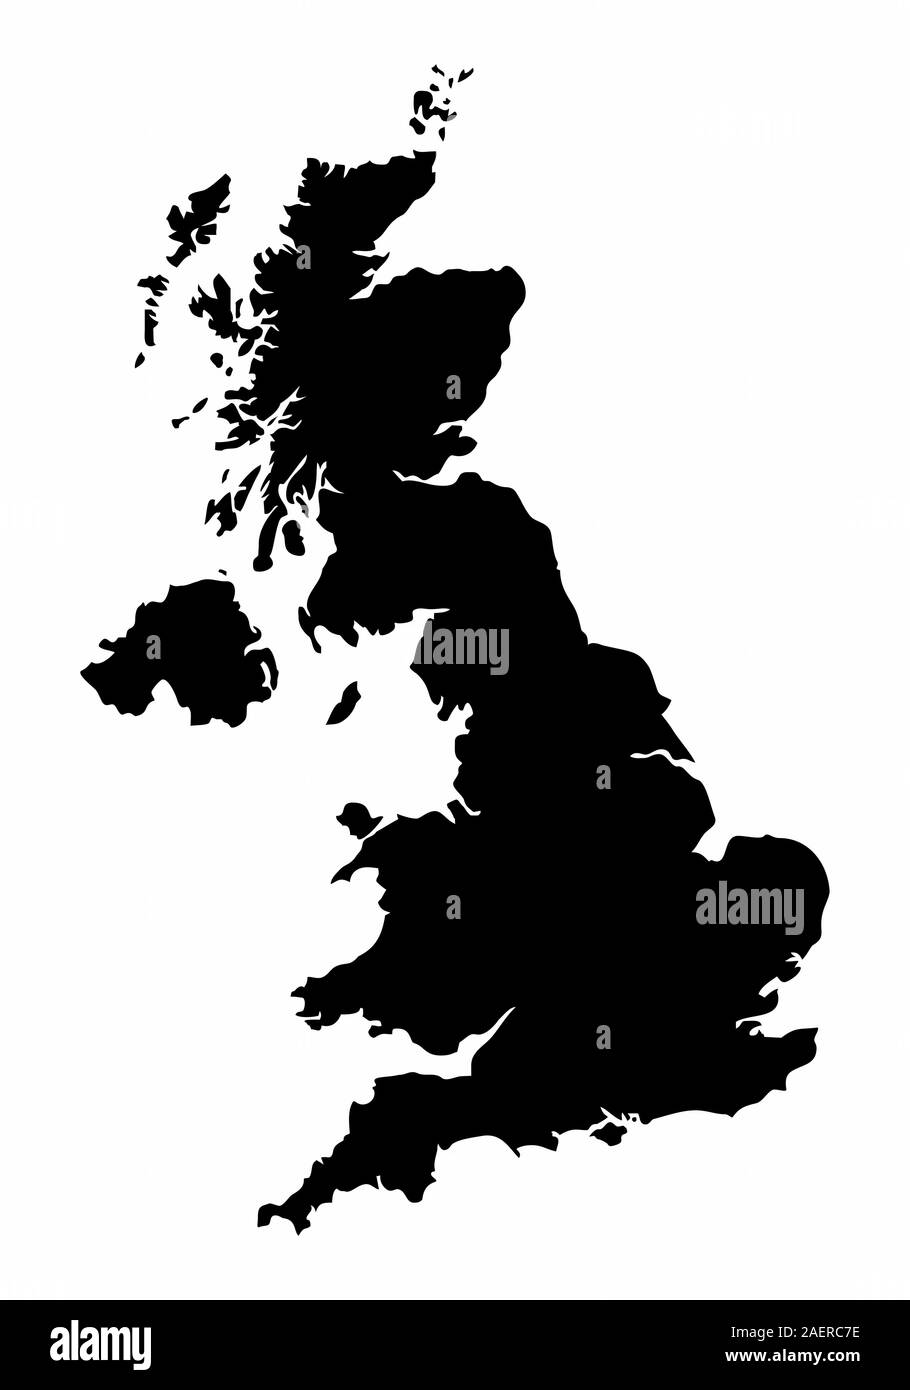 Vereinigtes Königreich silhouette Karte Stock Vektor